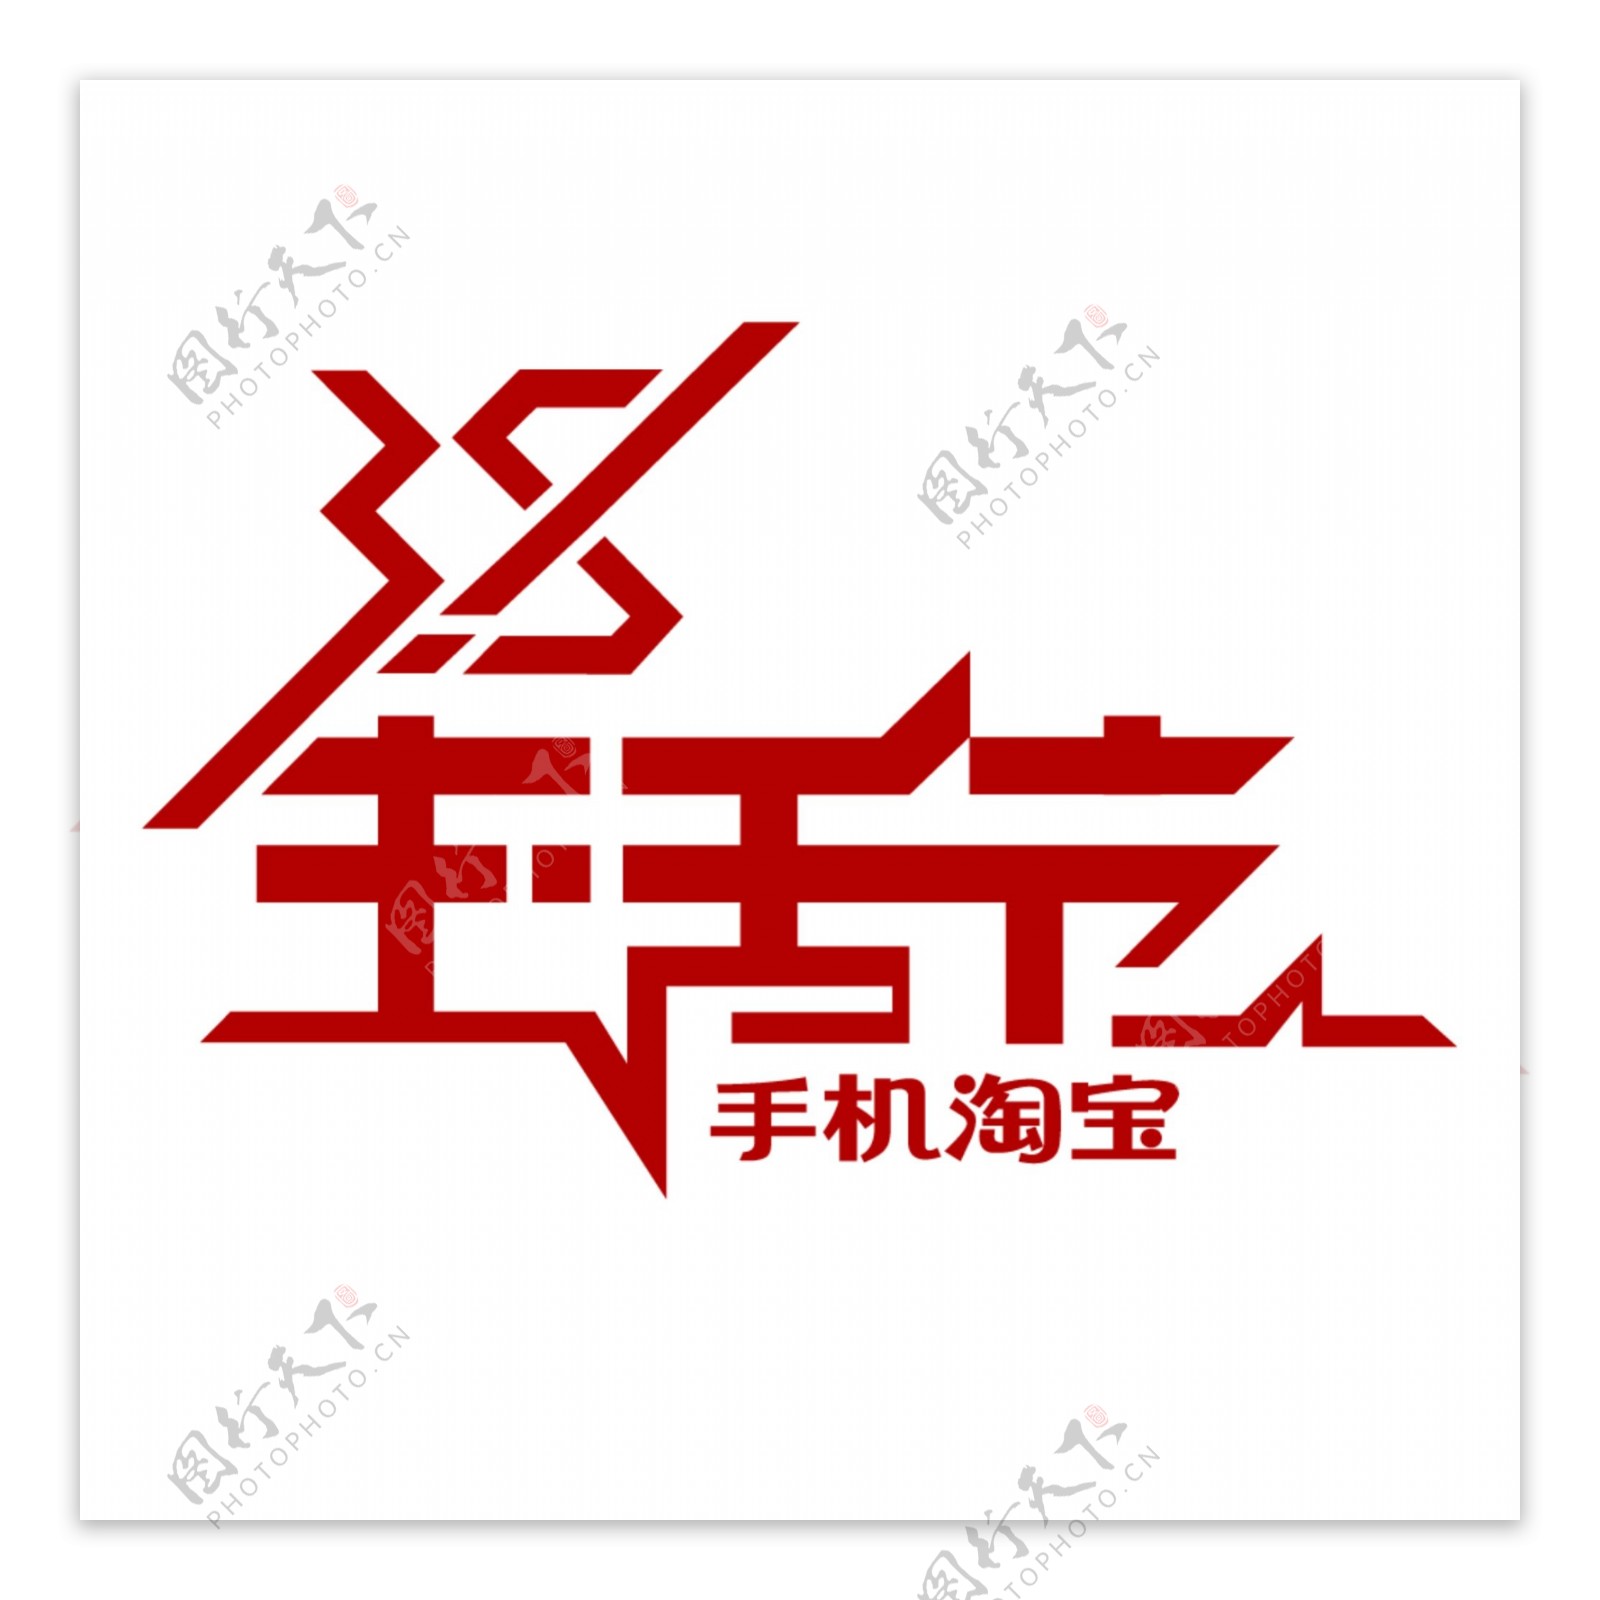 38生活节logo